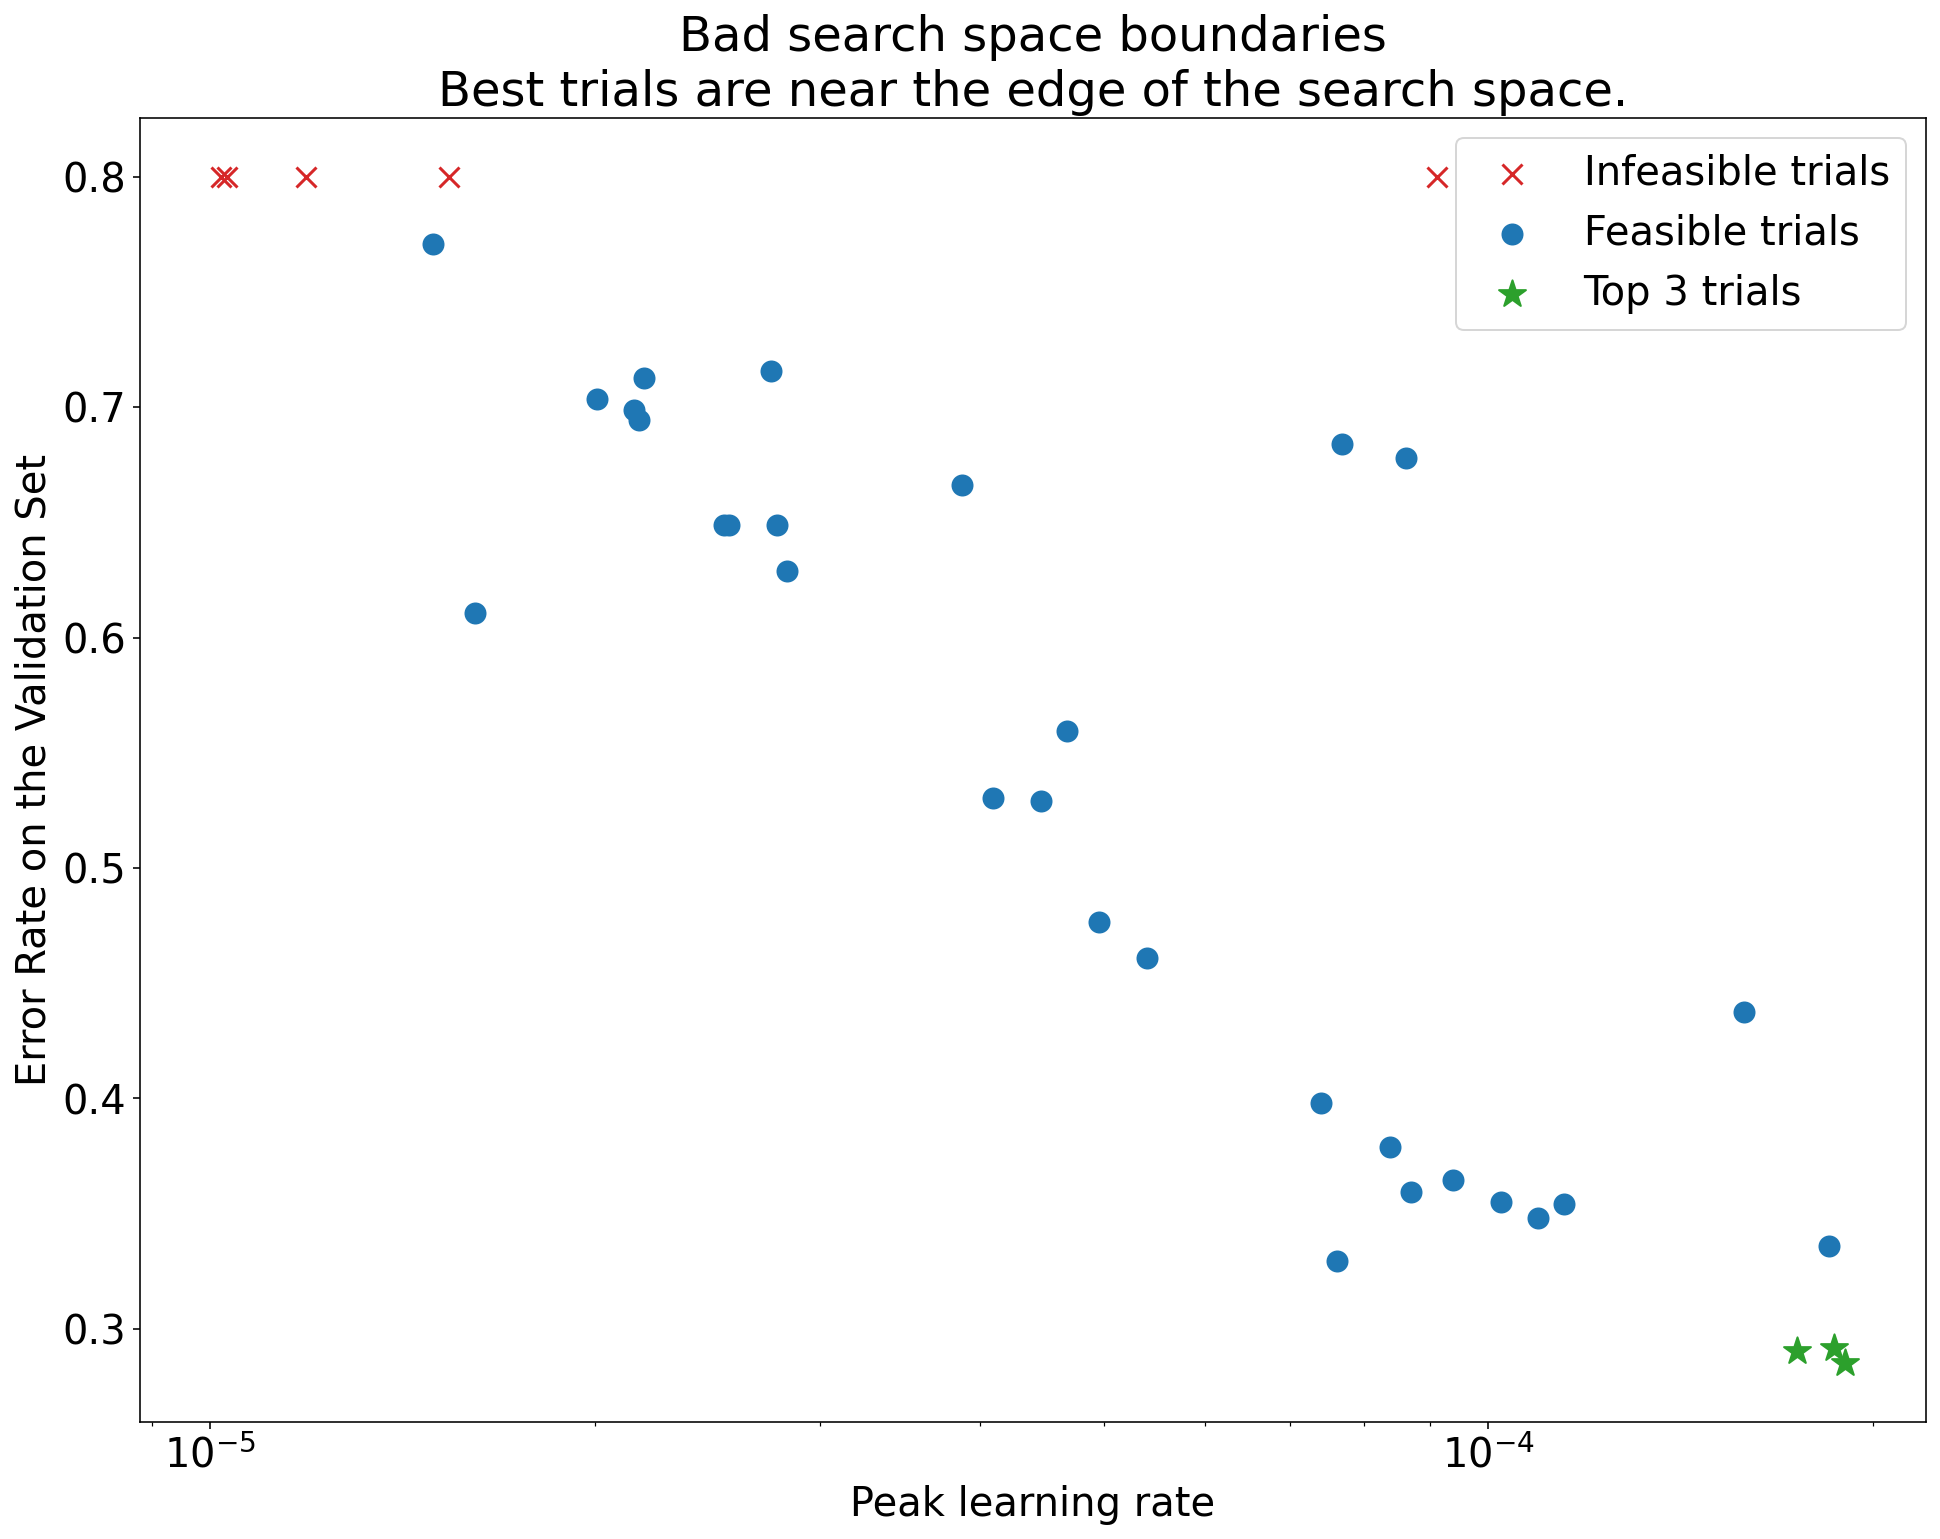 Wykres odsetka błędów na osi walidacji (oś y) w porównaniu z szczytem współczynnika uczenia się (oś X) pokazującym złe granice wyszukiwania. Ten wykres pokazuje, że najlepsze próby (najniższe współczynniki błędów) znajdują się na skraju obszaru wyszukiwania, gdzie najwyższa wartość uczenia się jest najwyższa.